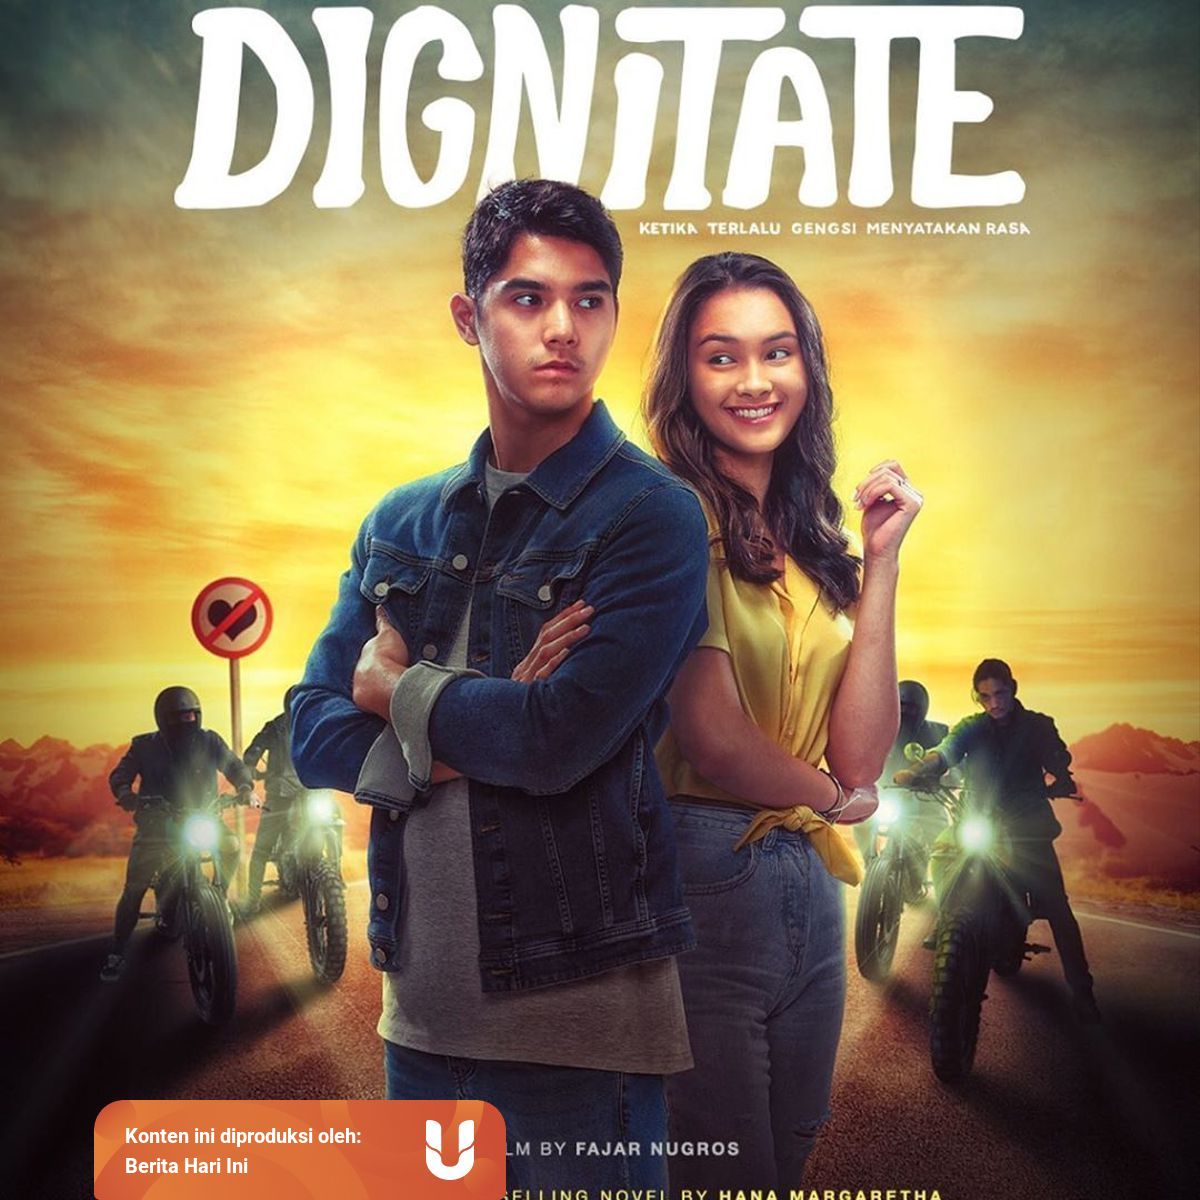 Sinopsis Dignitate : Cerita Klasik SMA dan Drama Keluarga | kumparan.com